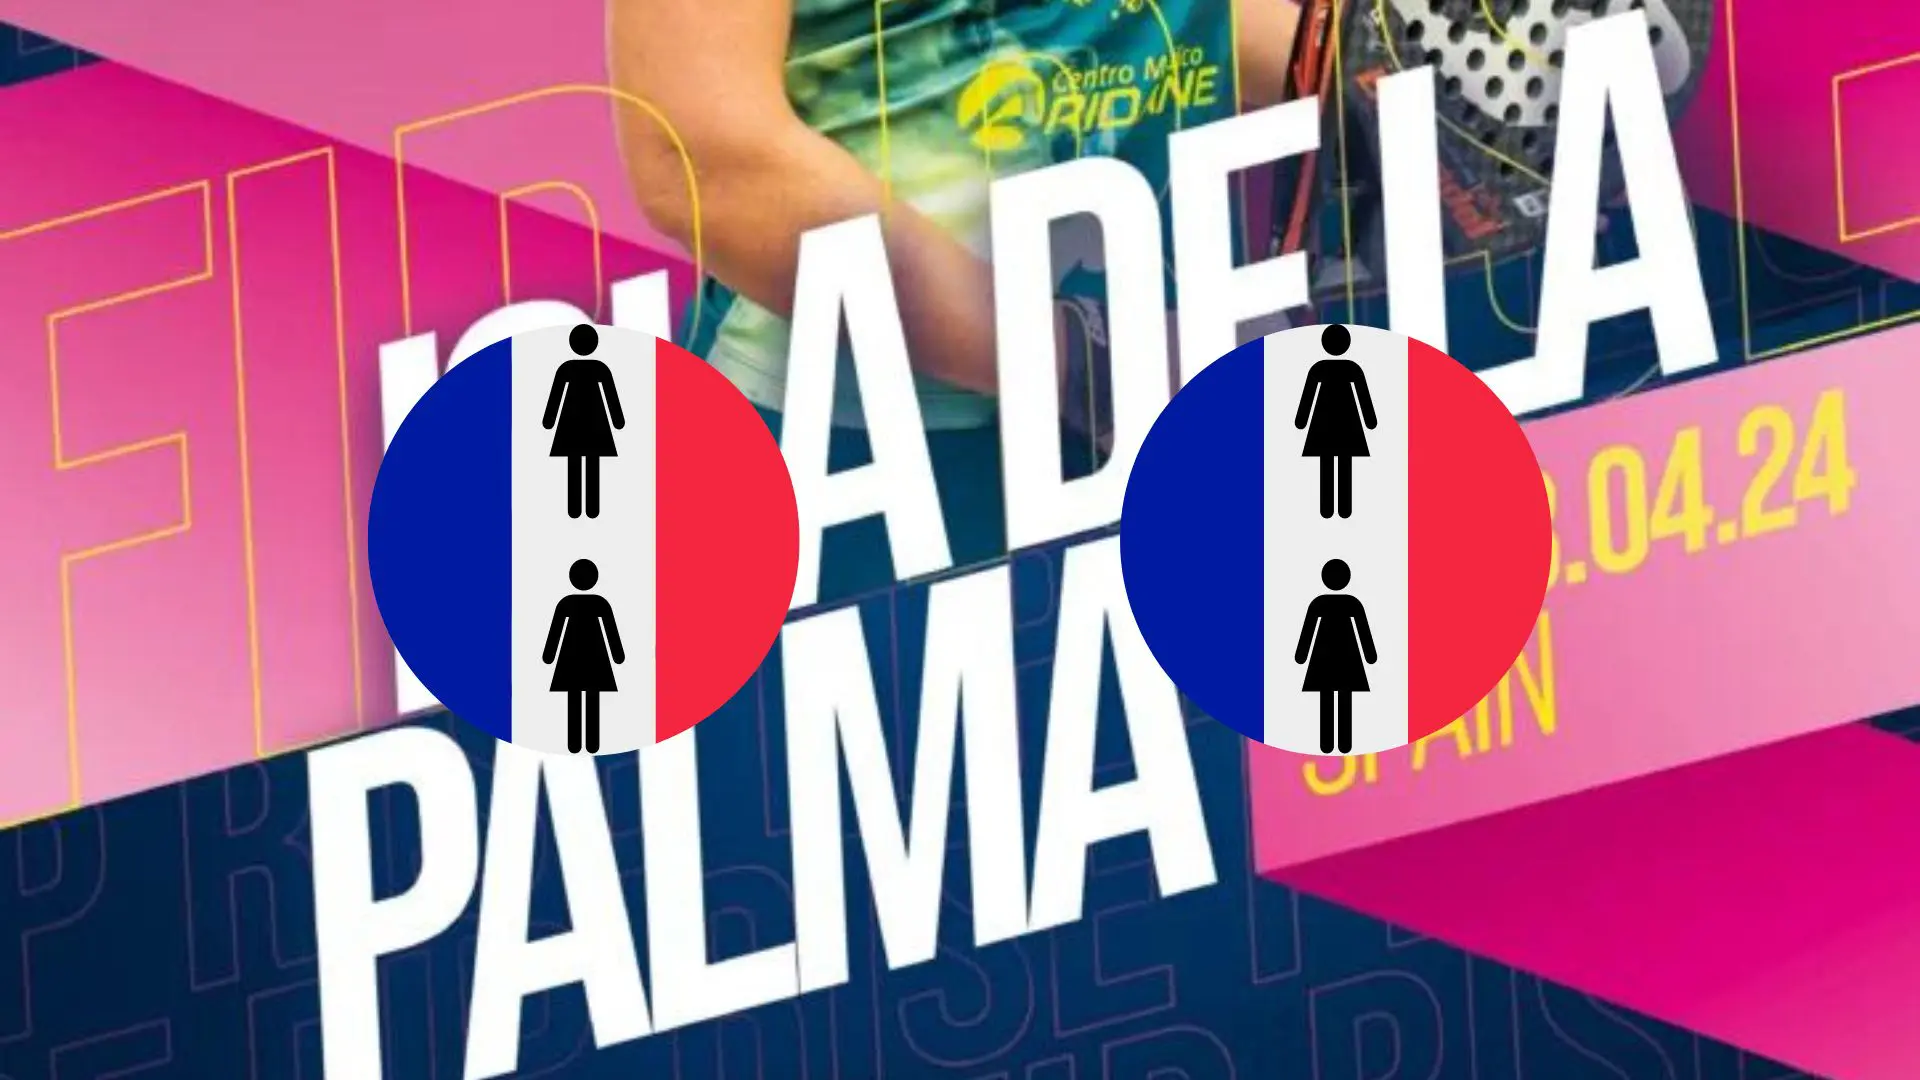 FIP Isla de la Palma – Det franska programmet